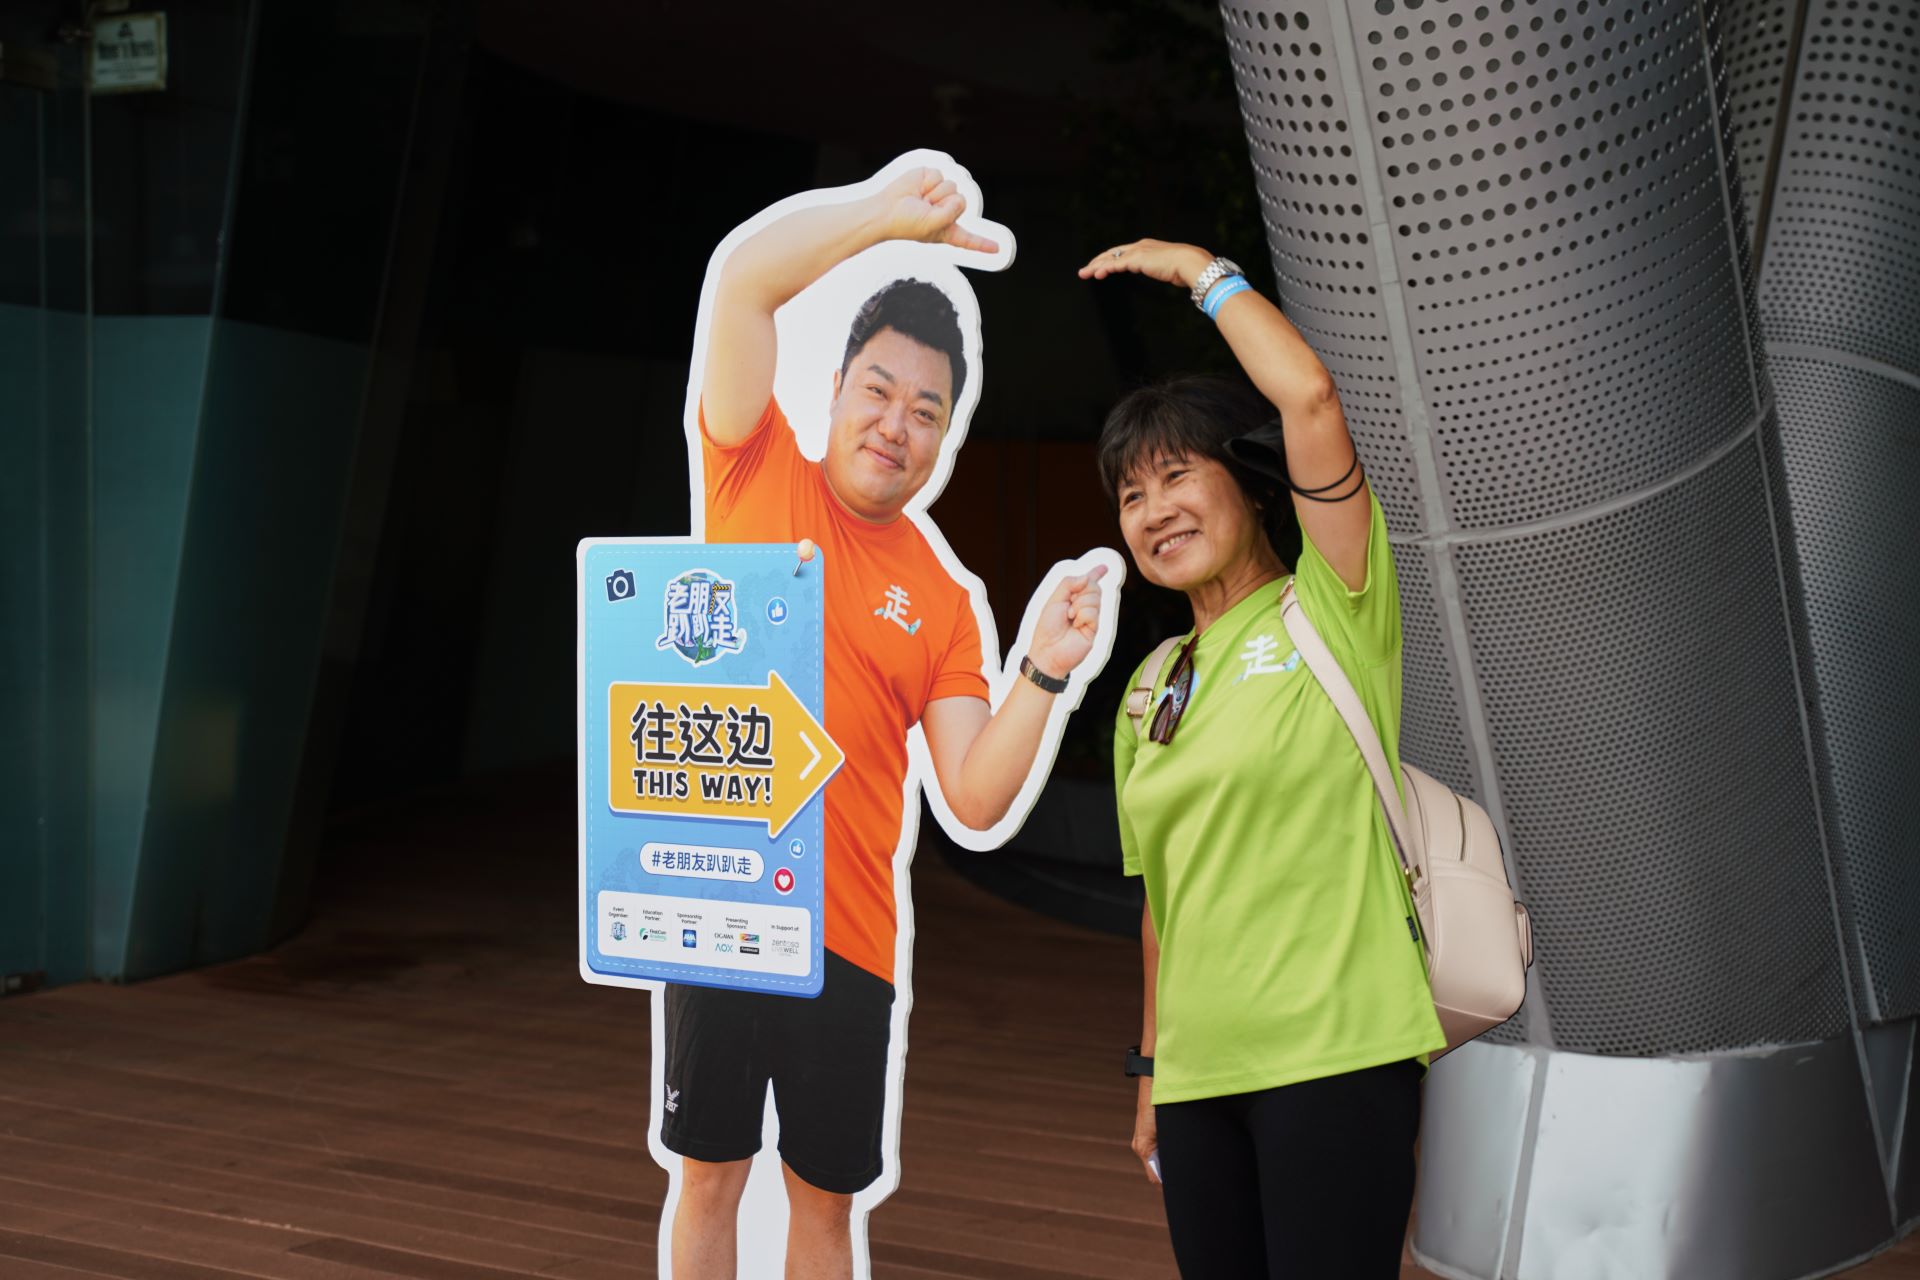 老朋友趴趴走 PaPaZao participants smiling and taking creative photo wit standee on their walk at Sentosa Island, Singapore.